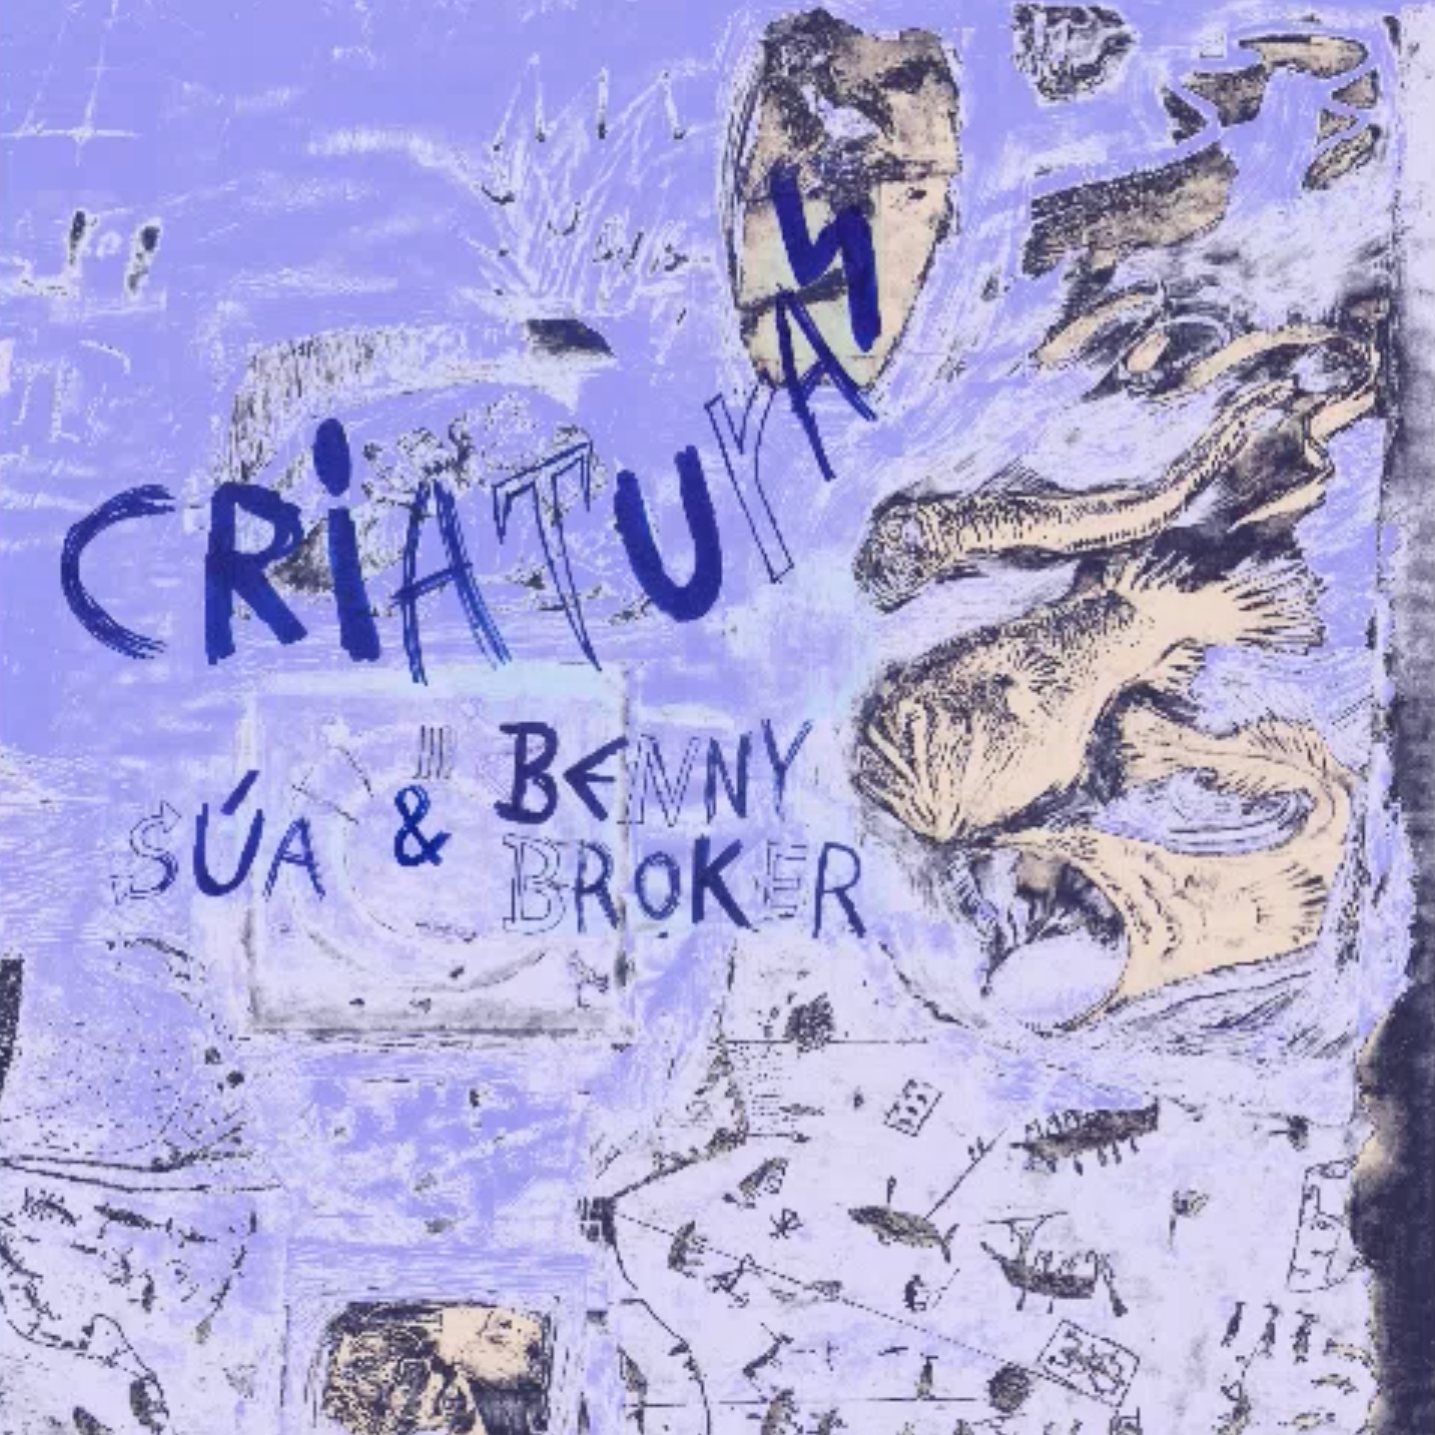 25. SÚA &amp; Benny Broker - ep Criaturas